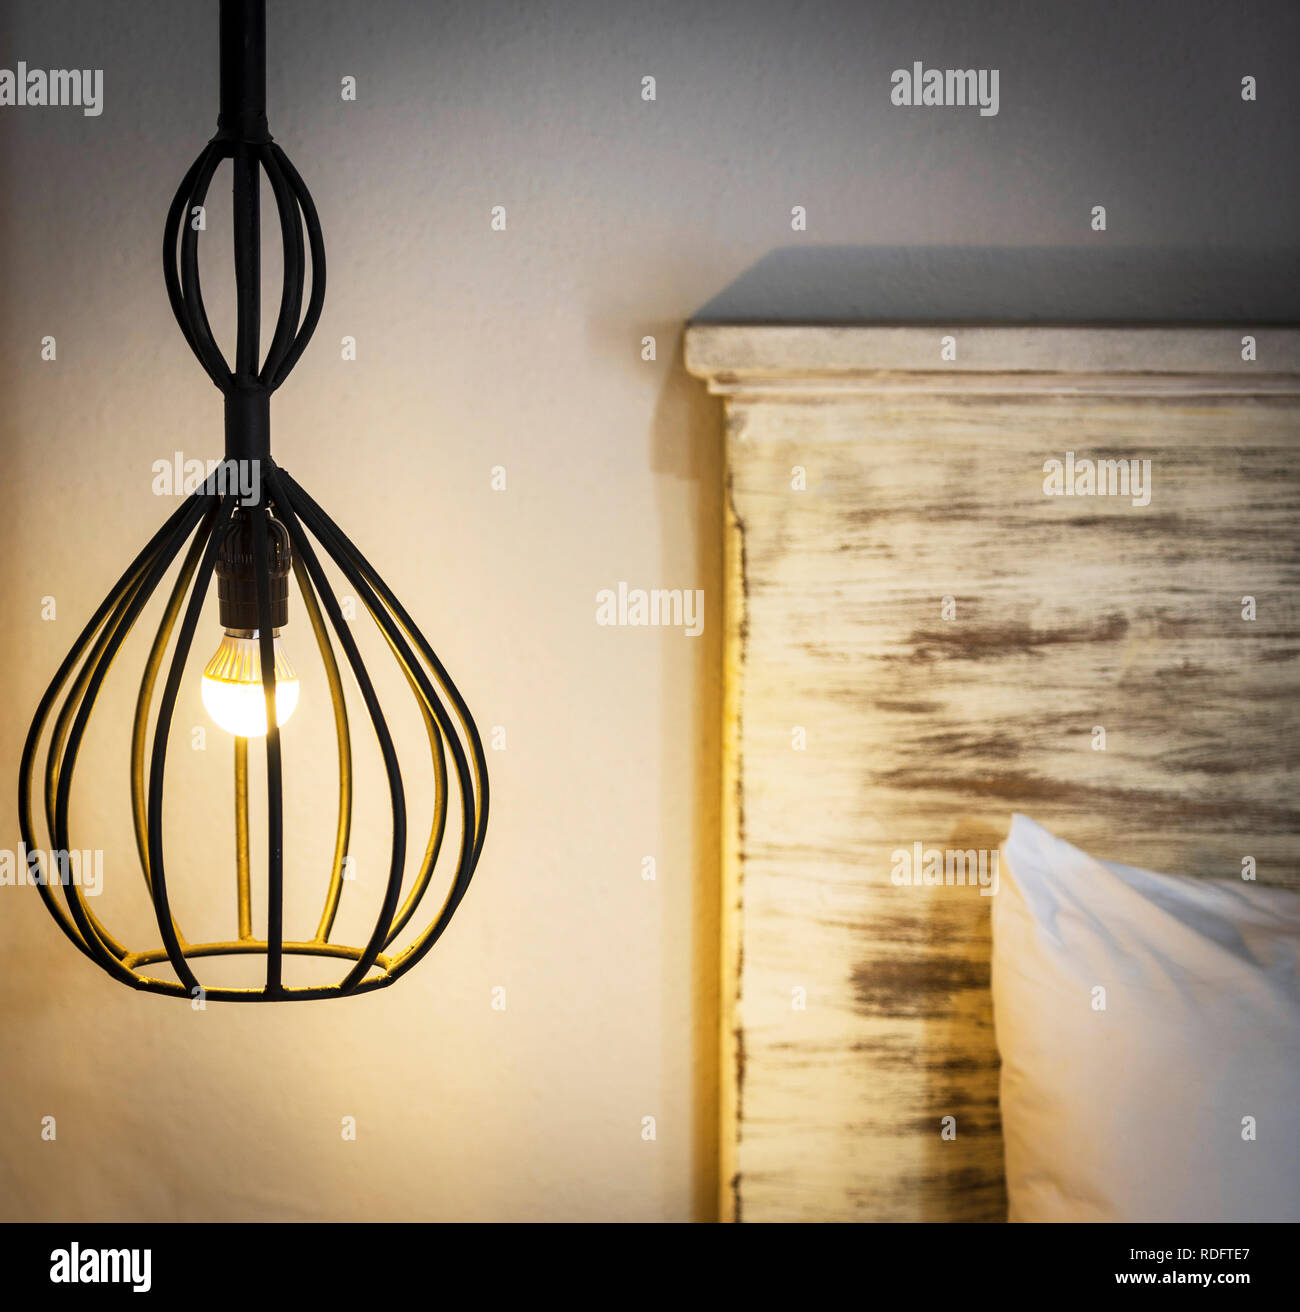 Lampe Ausgesetzt Stockfotos und -bilder Kaufen - Alamy